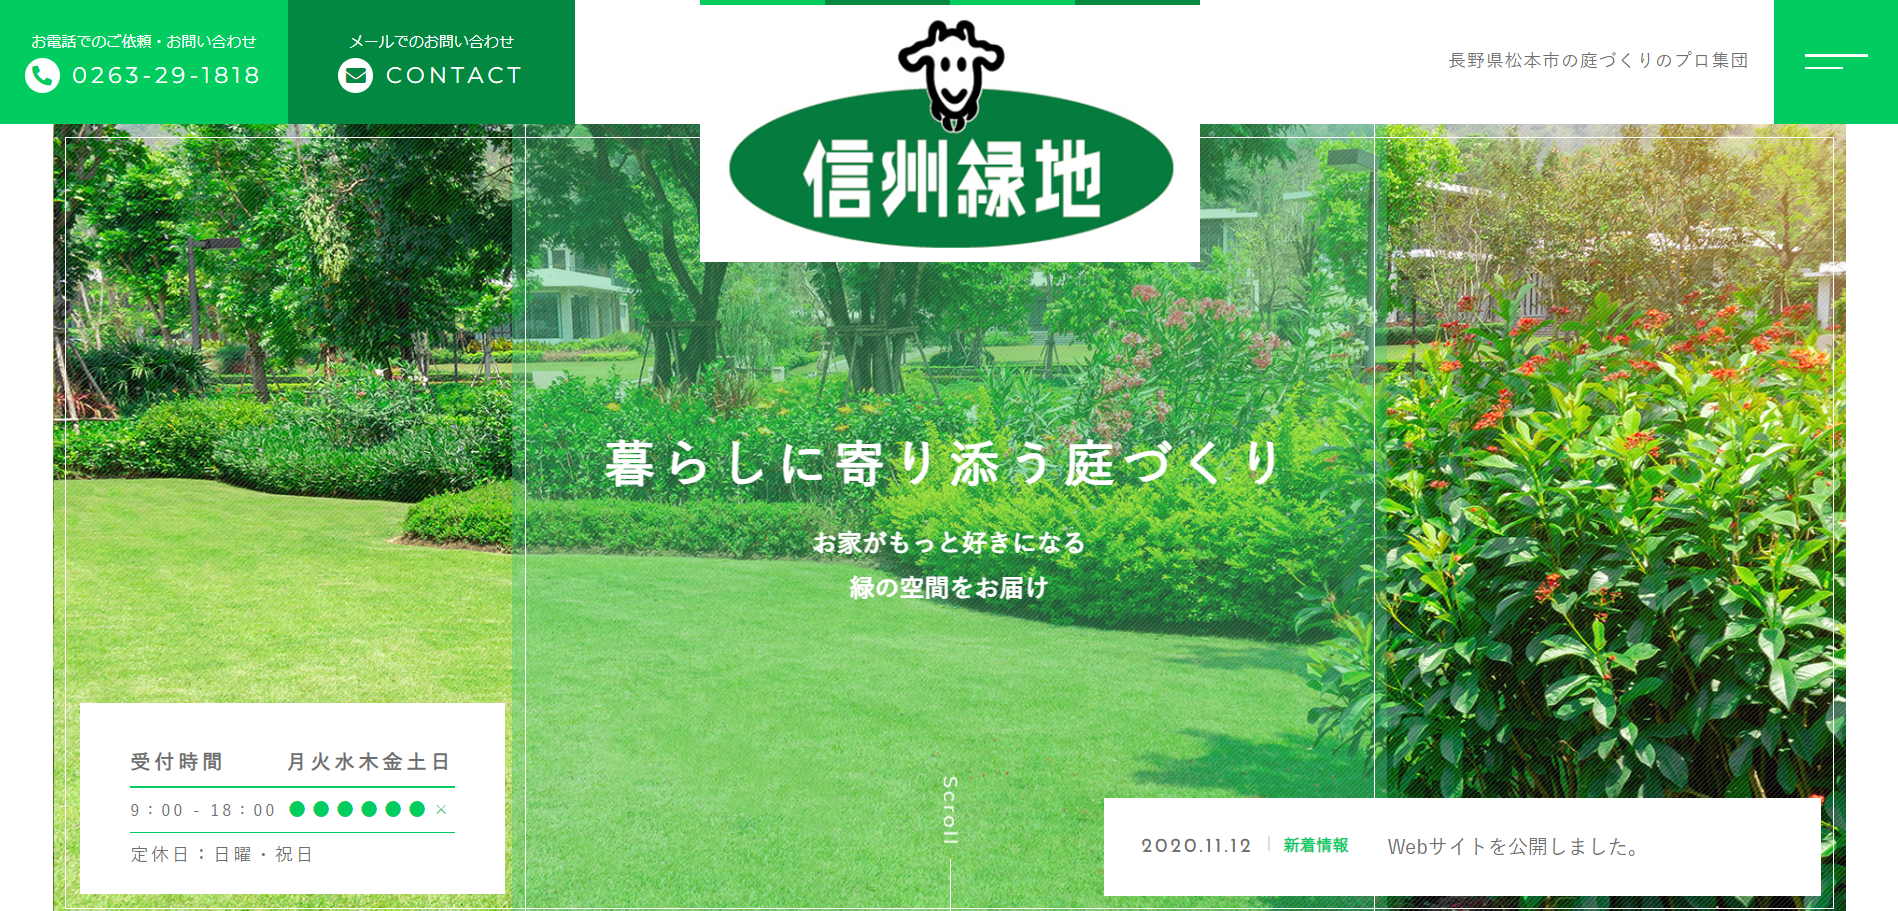 松本市で評判のおすすめ外構業者ランキング 第9位 信州緑地